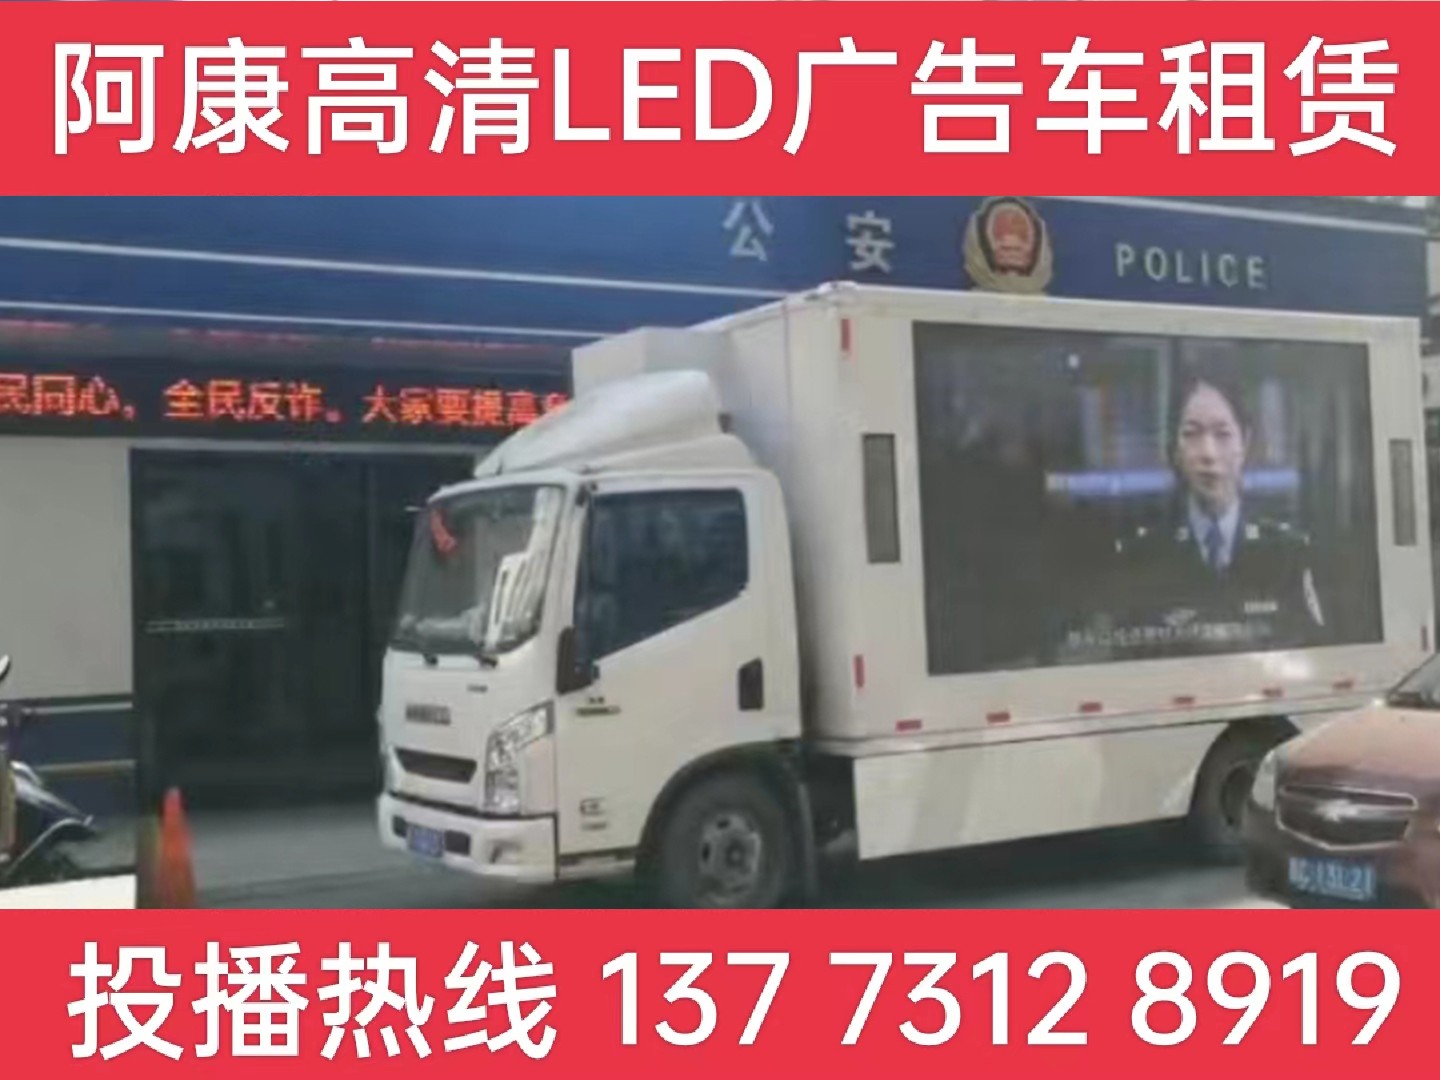 张家港LED广告车租赁-反诈宣传